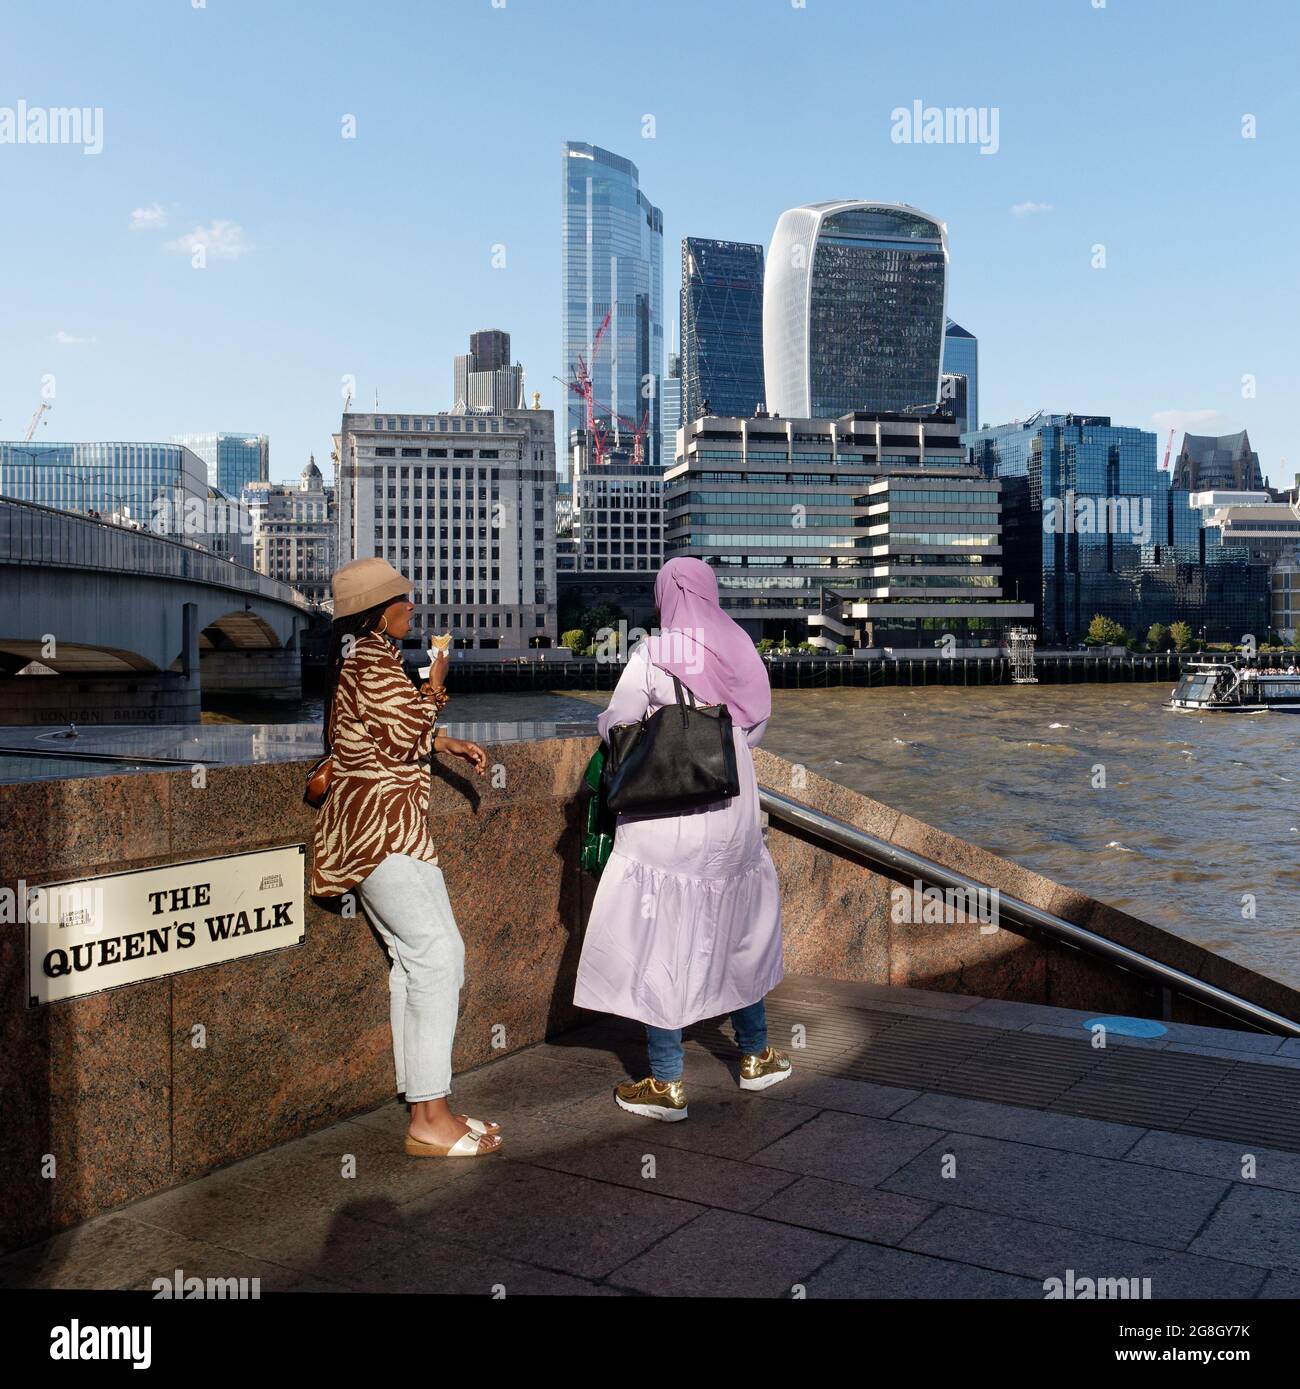 Londra, Greater London, Inghilterra, 12 2021 giugno: Fiume Tamigi con il grattacielo Walkie Talkie sullo sfondo come due Signore socializzare in primo piano. Foto Stock